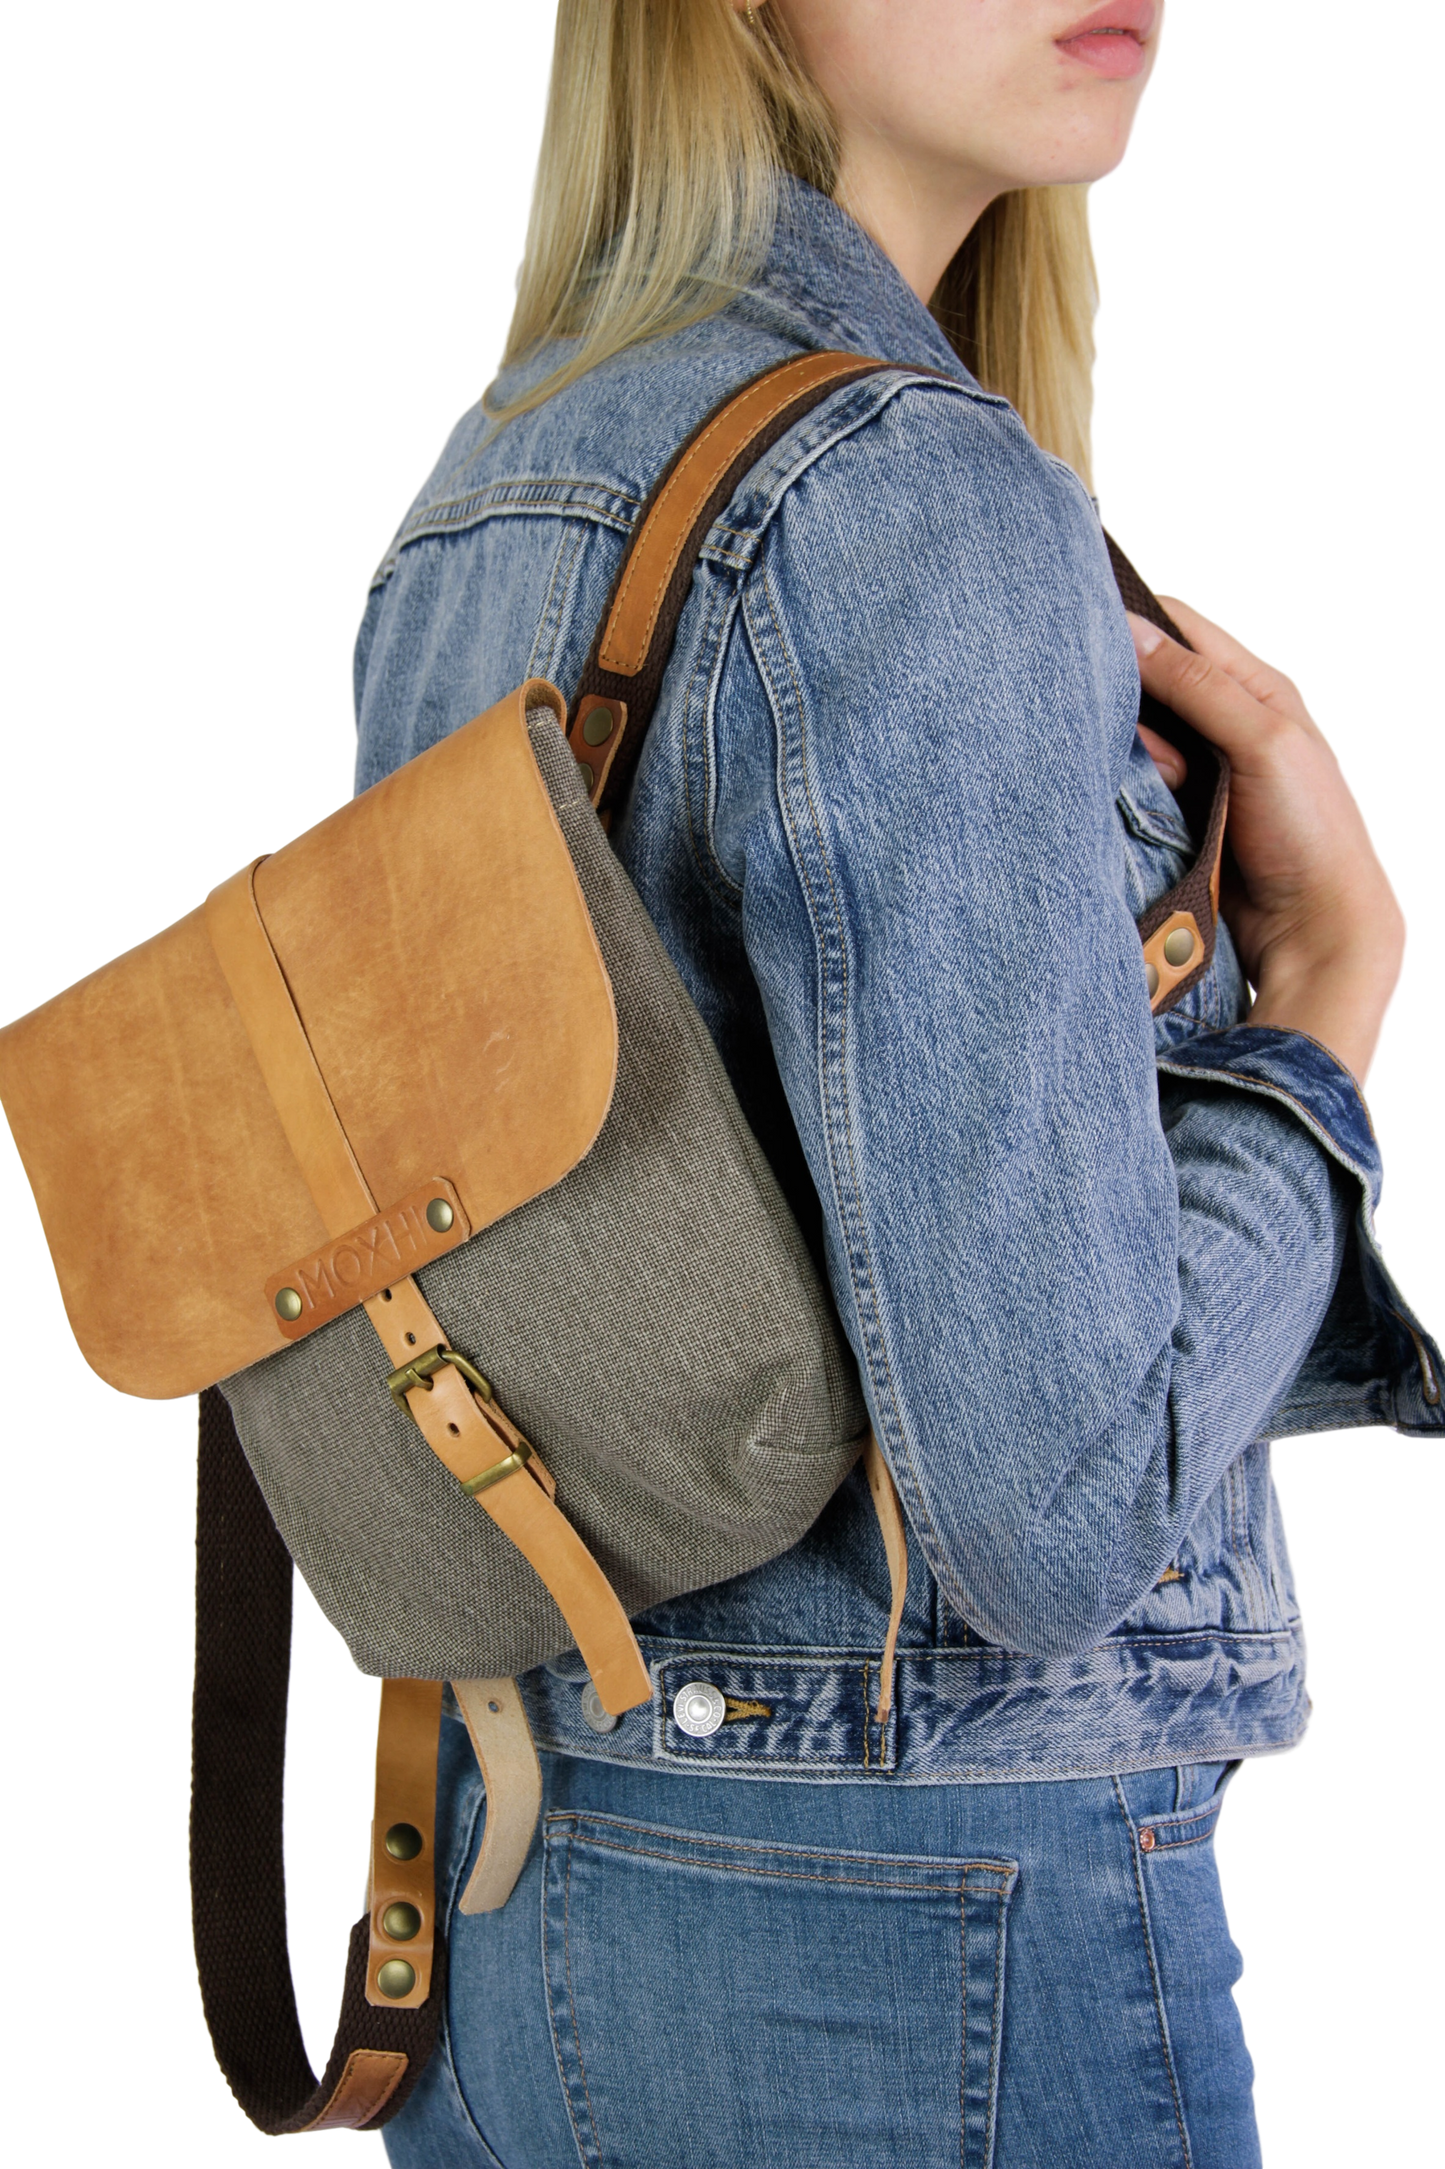 Small artisanal backpack handmade